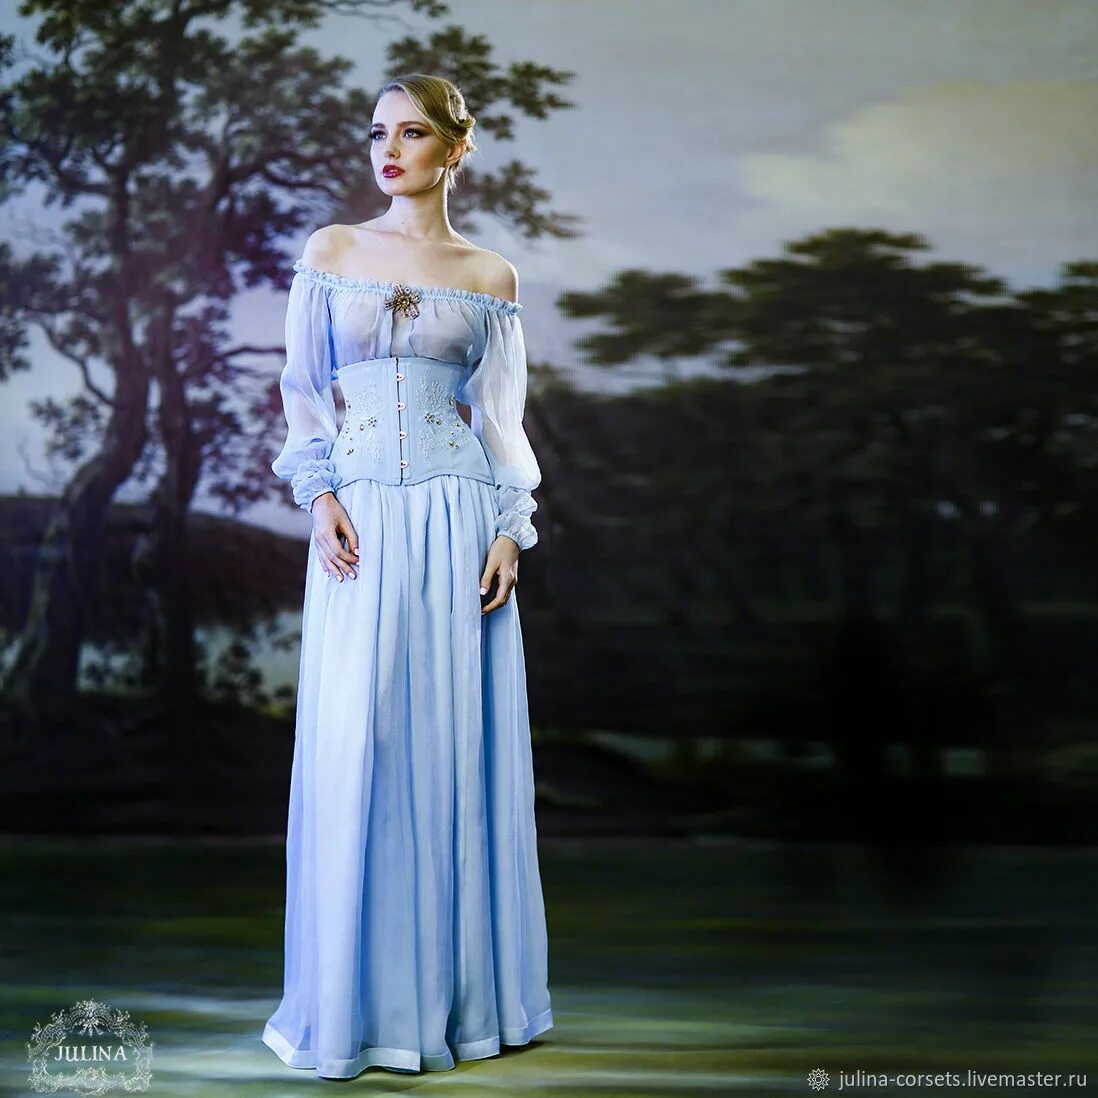 Платье версаль. Платье мода Версаль. Платье из натурального шелка. Свадебное платье Версаль.